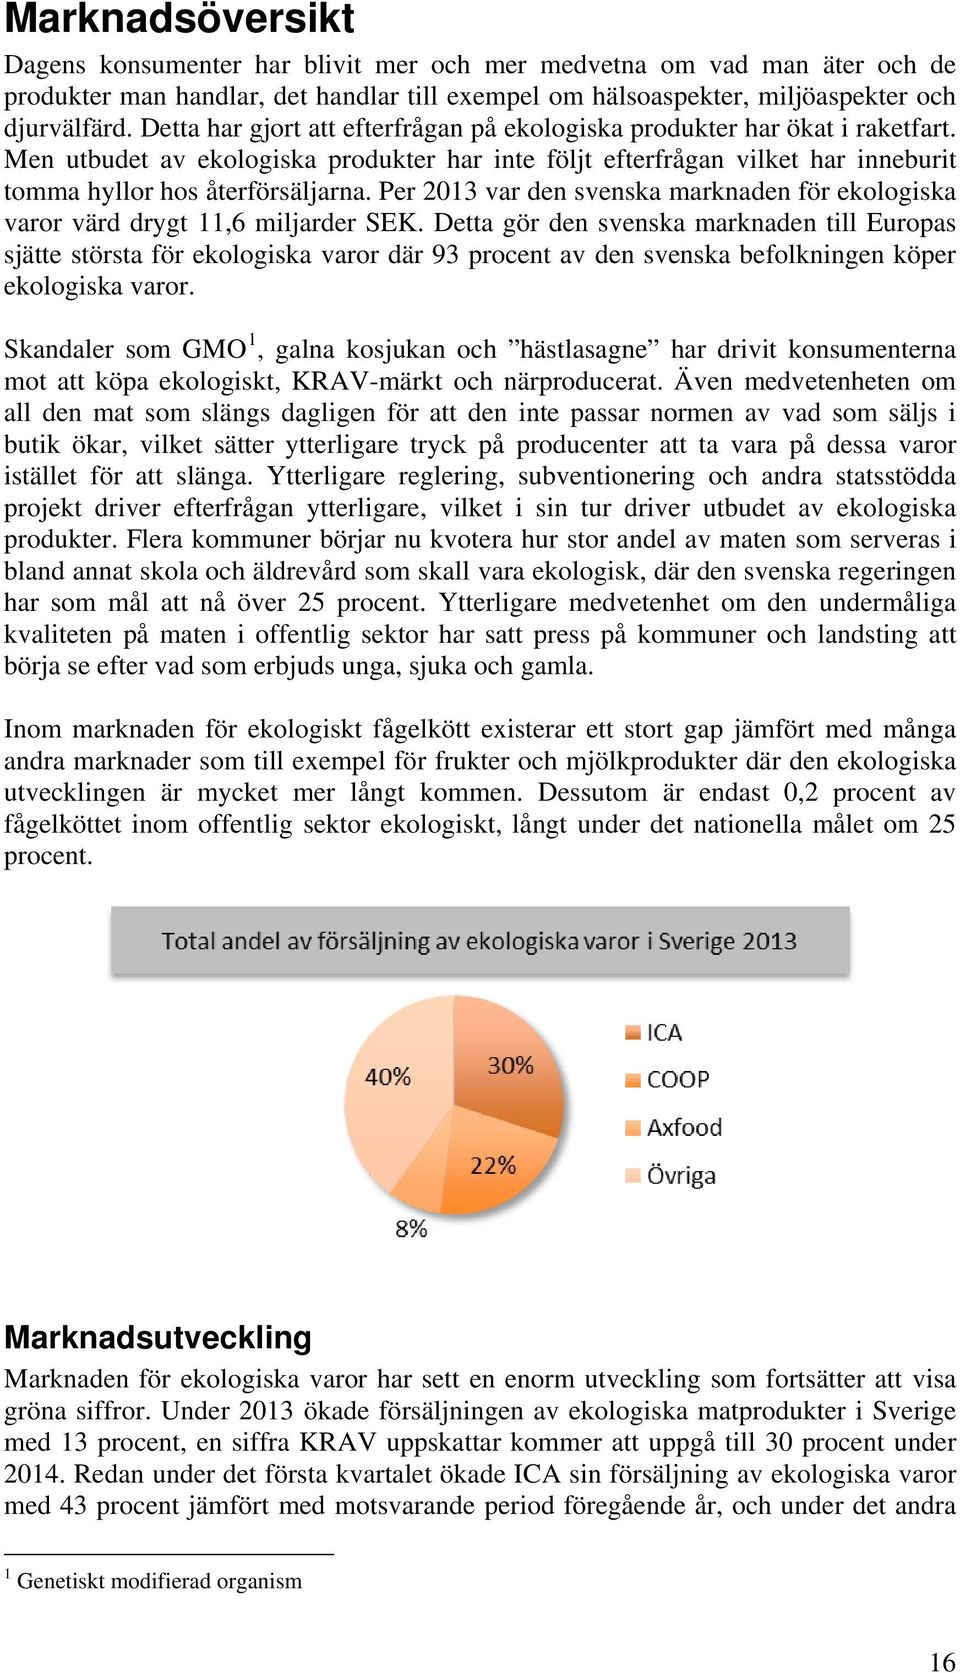 Per 2013 var den svenska marknaden för ekologiska varor värd drygt 11,6 miljarder SEK.